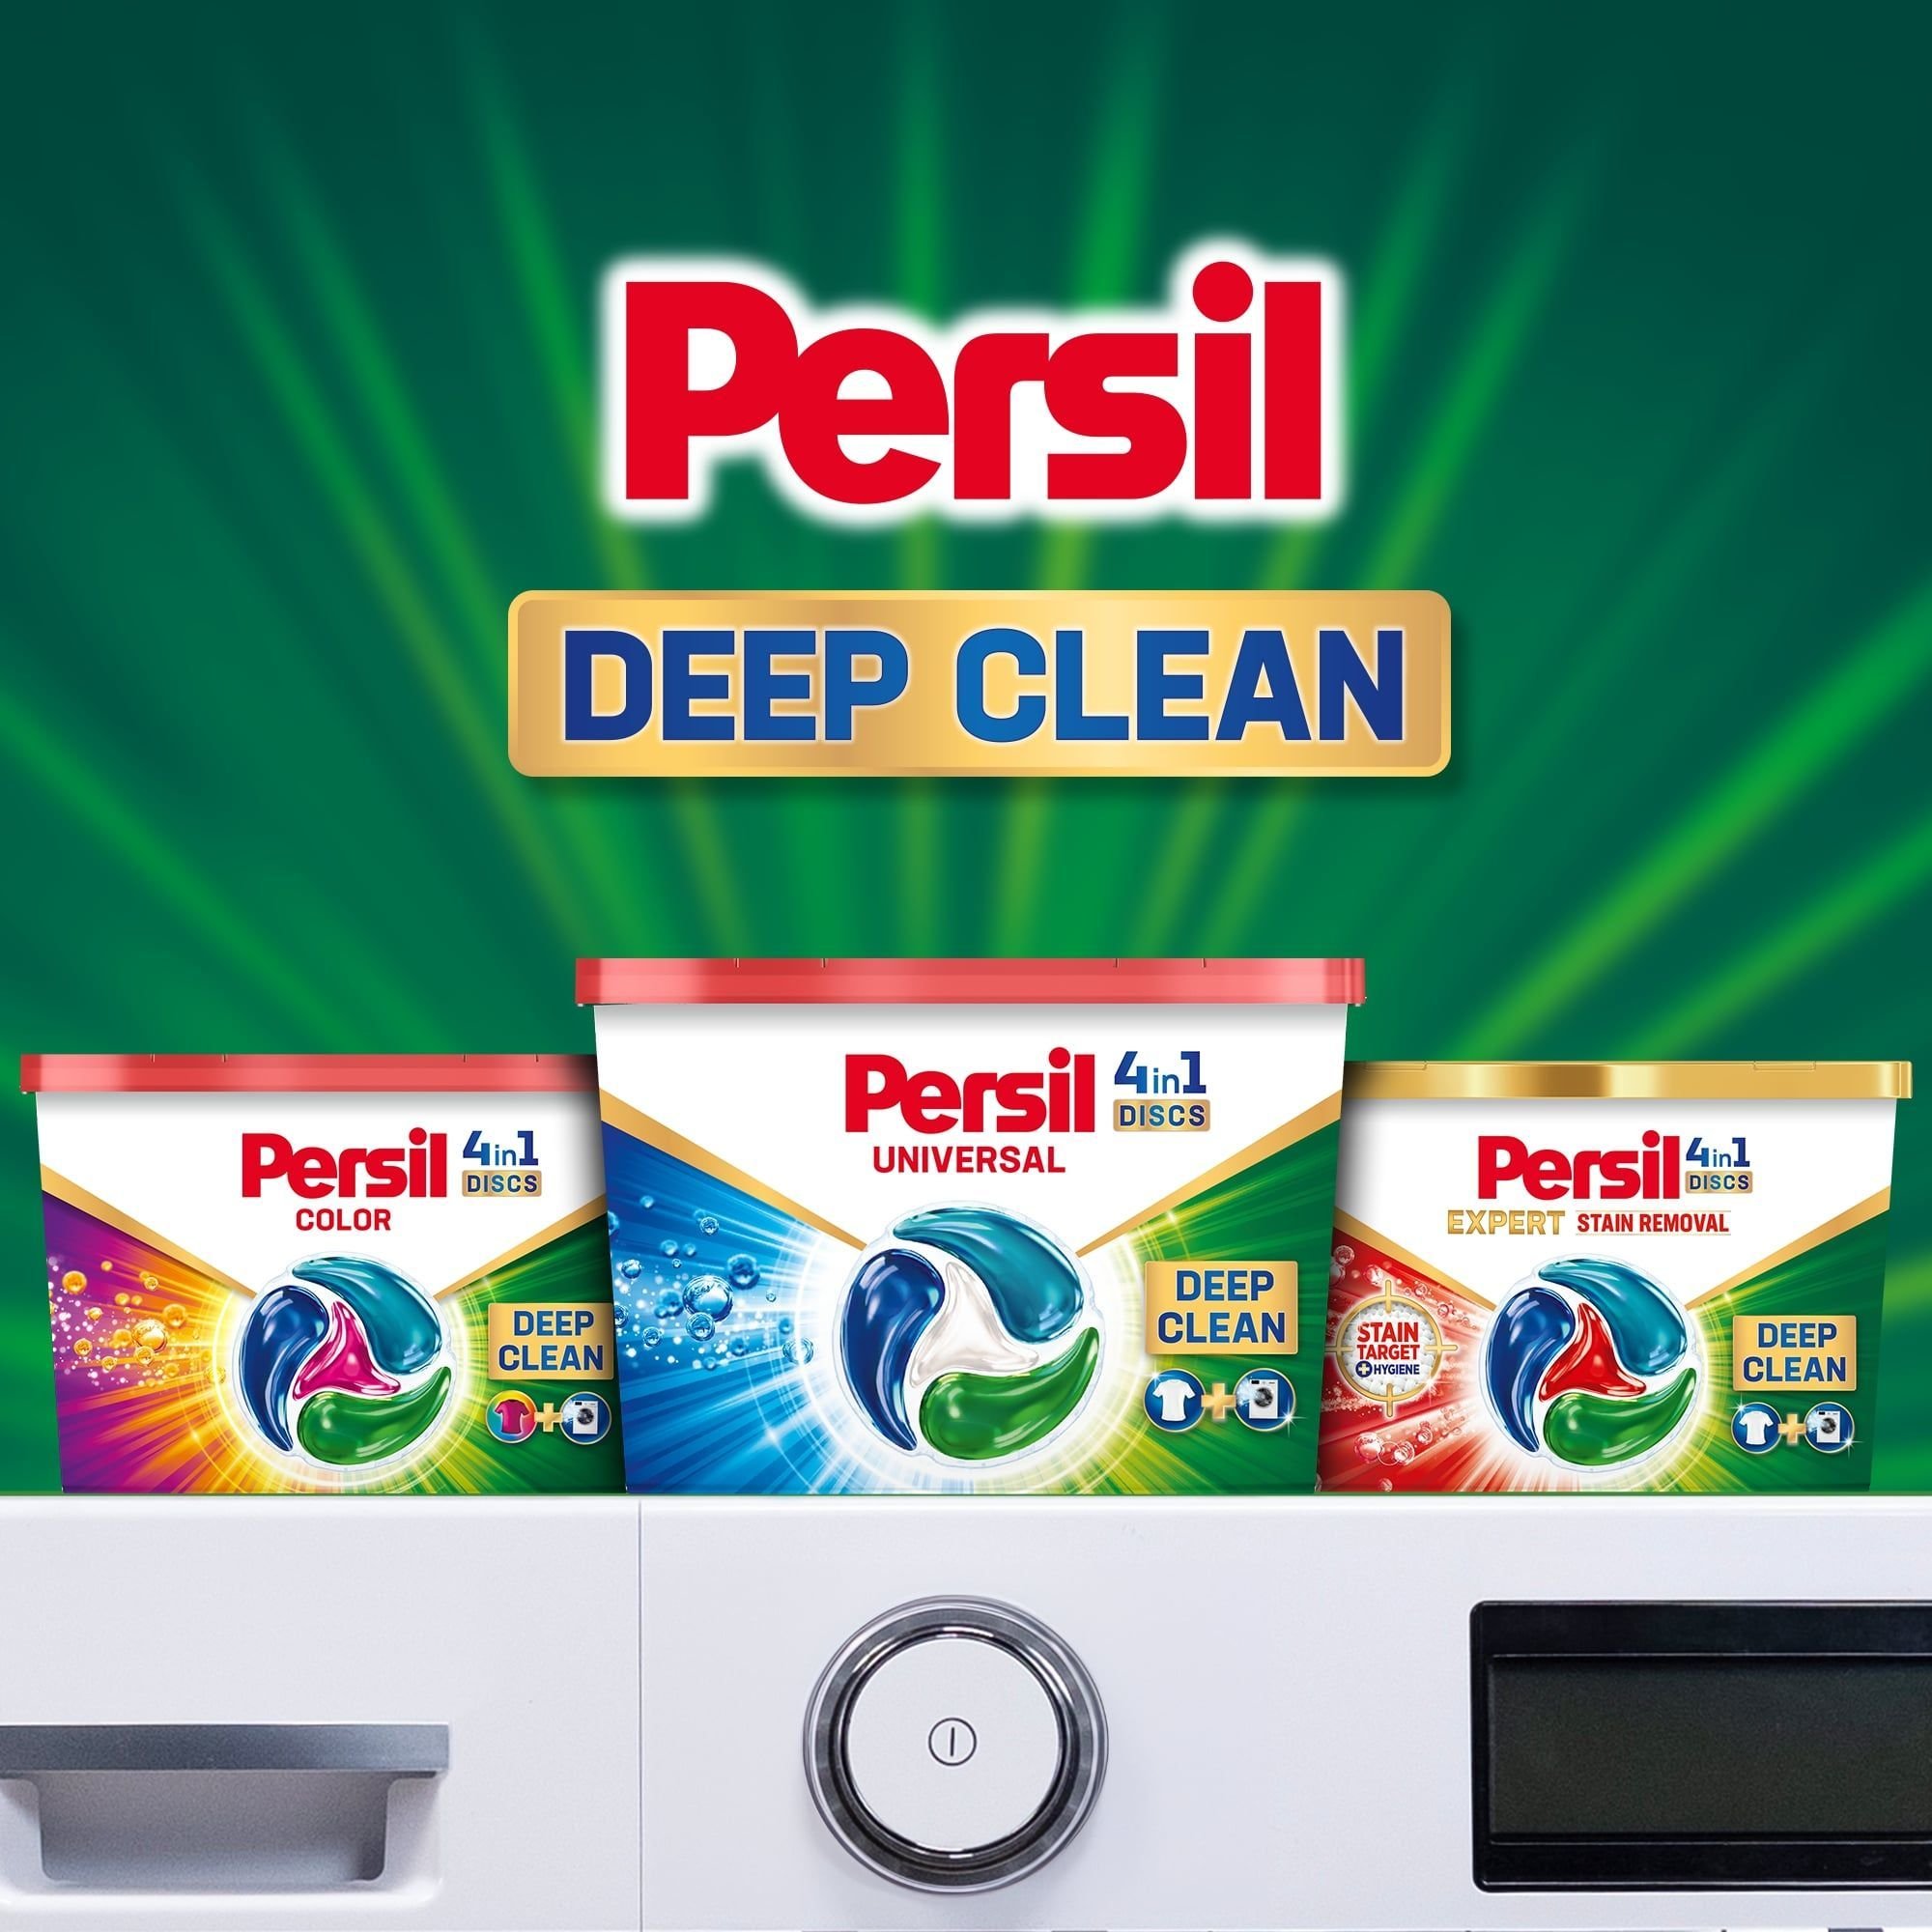 Диски для прання Persil Deep Cleen Universal 4 in 1 Discs 26 шт. - фото 6